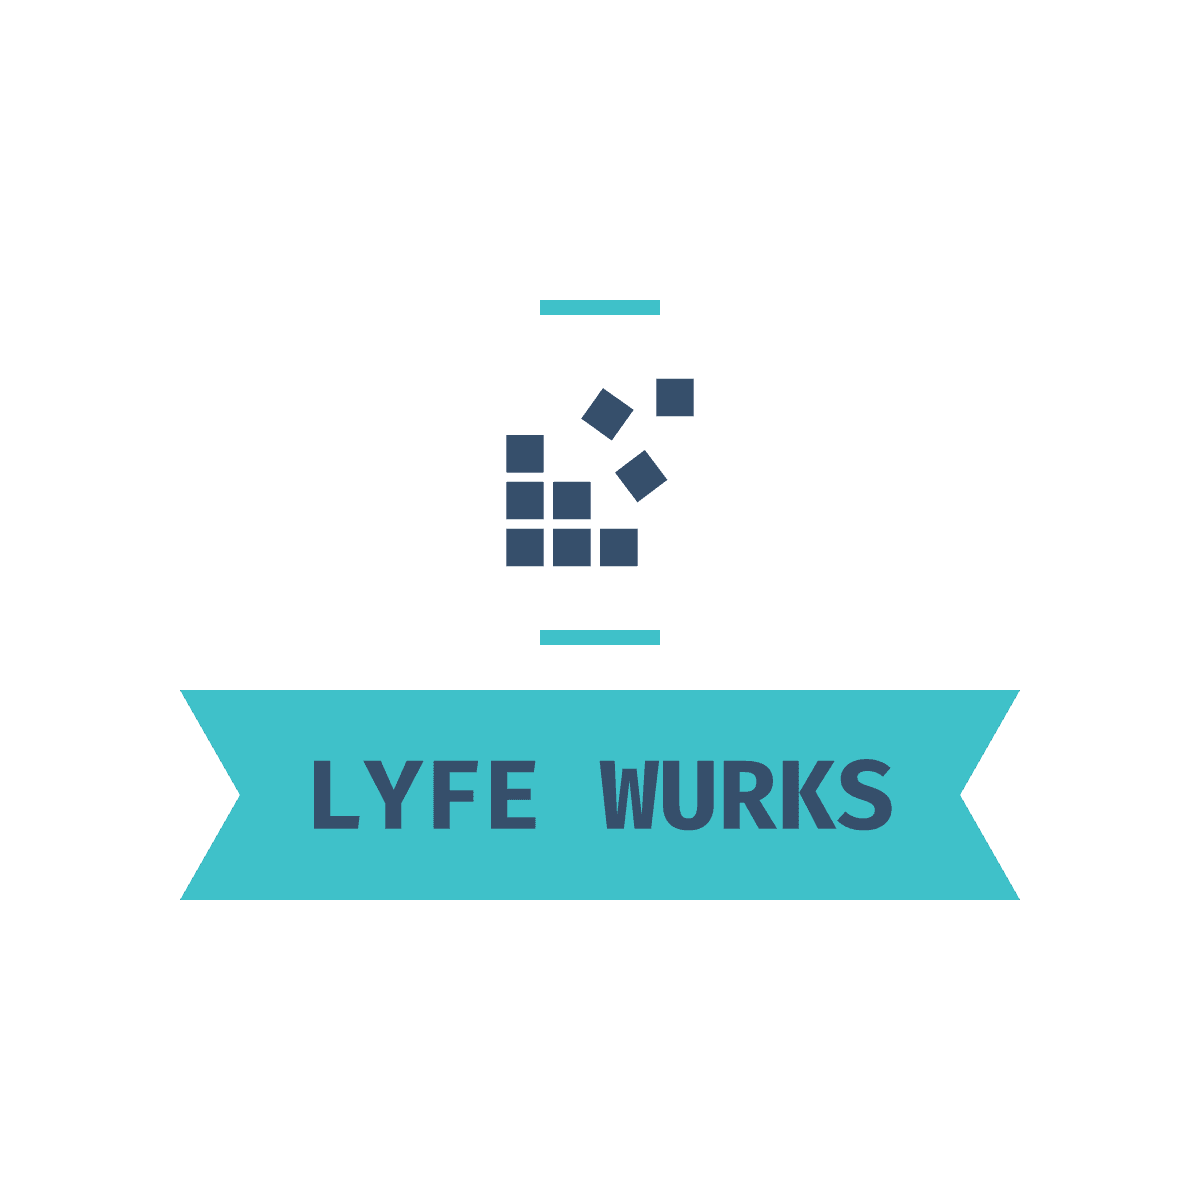 LYFE WURKS – Marketing & Branding